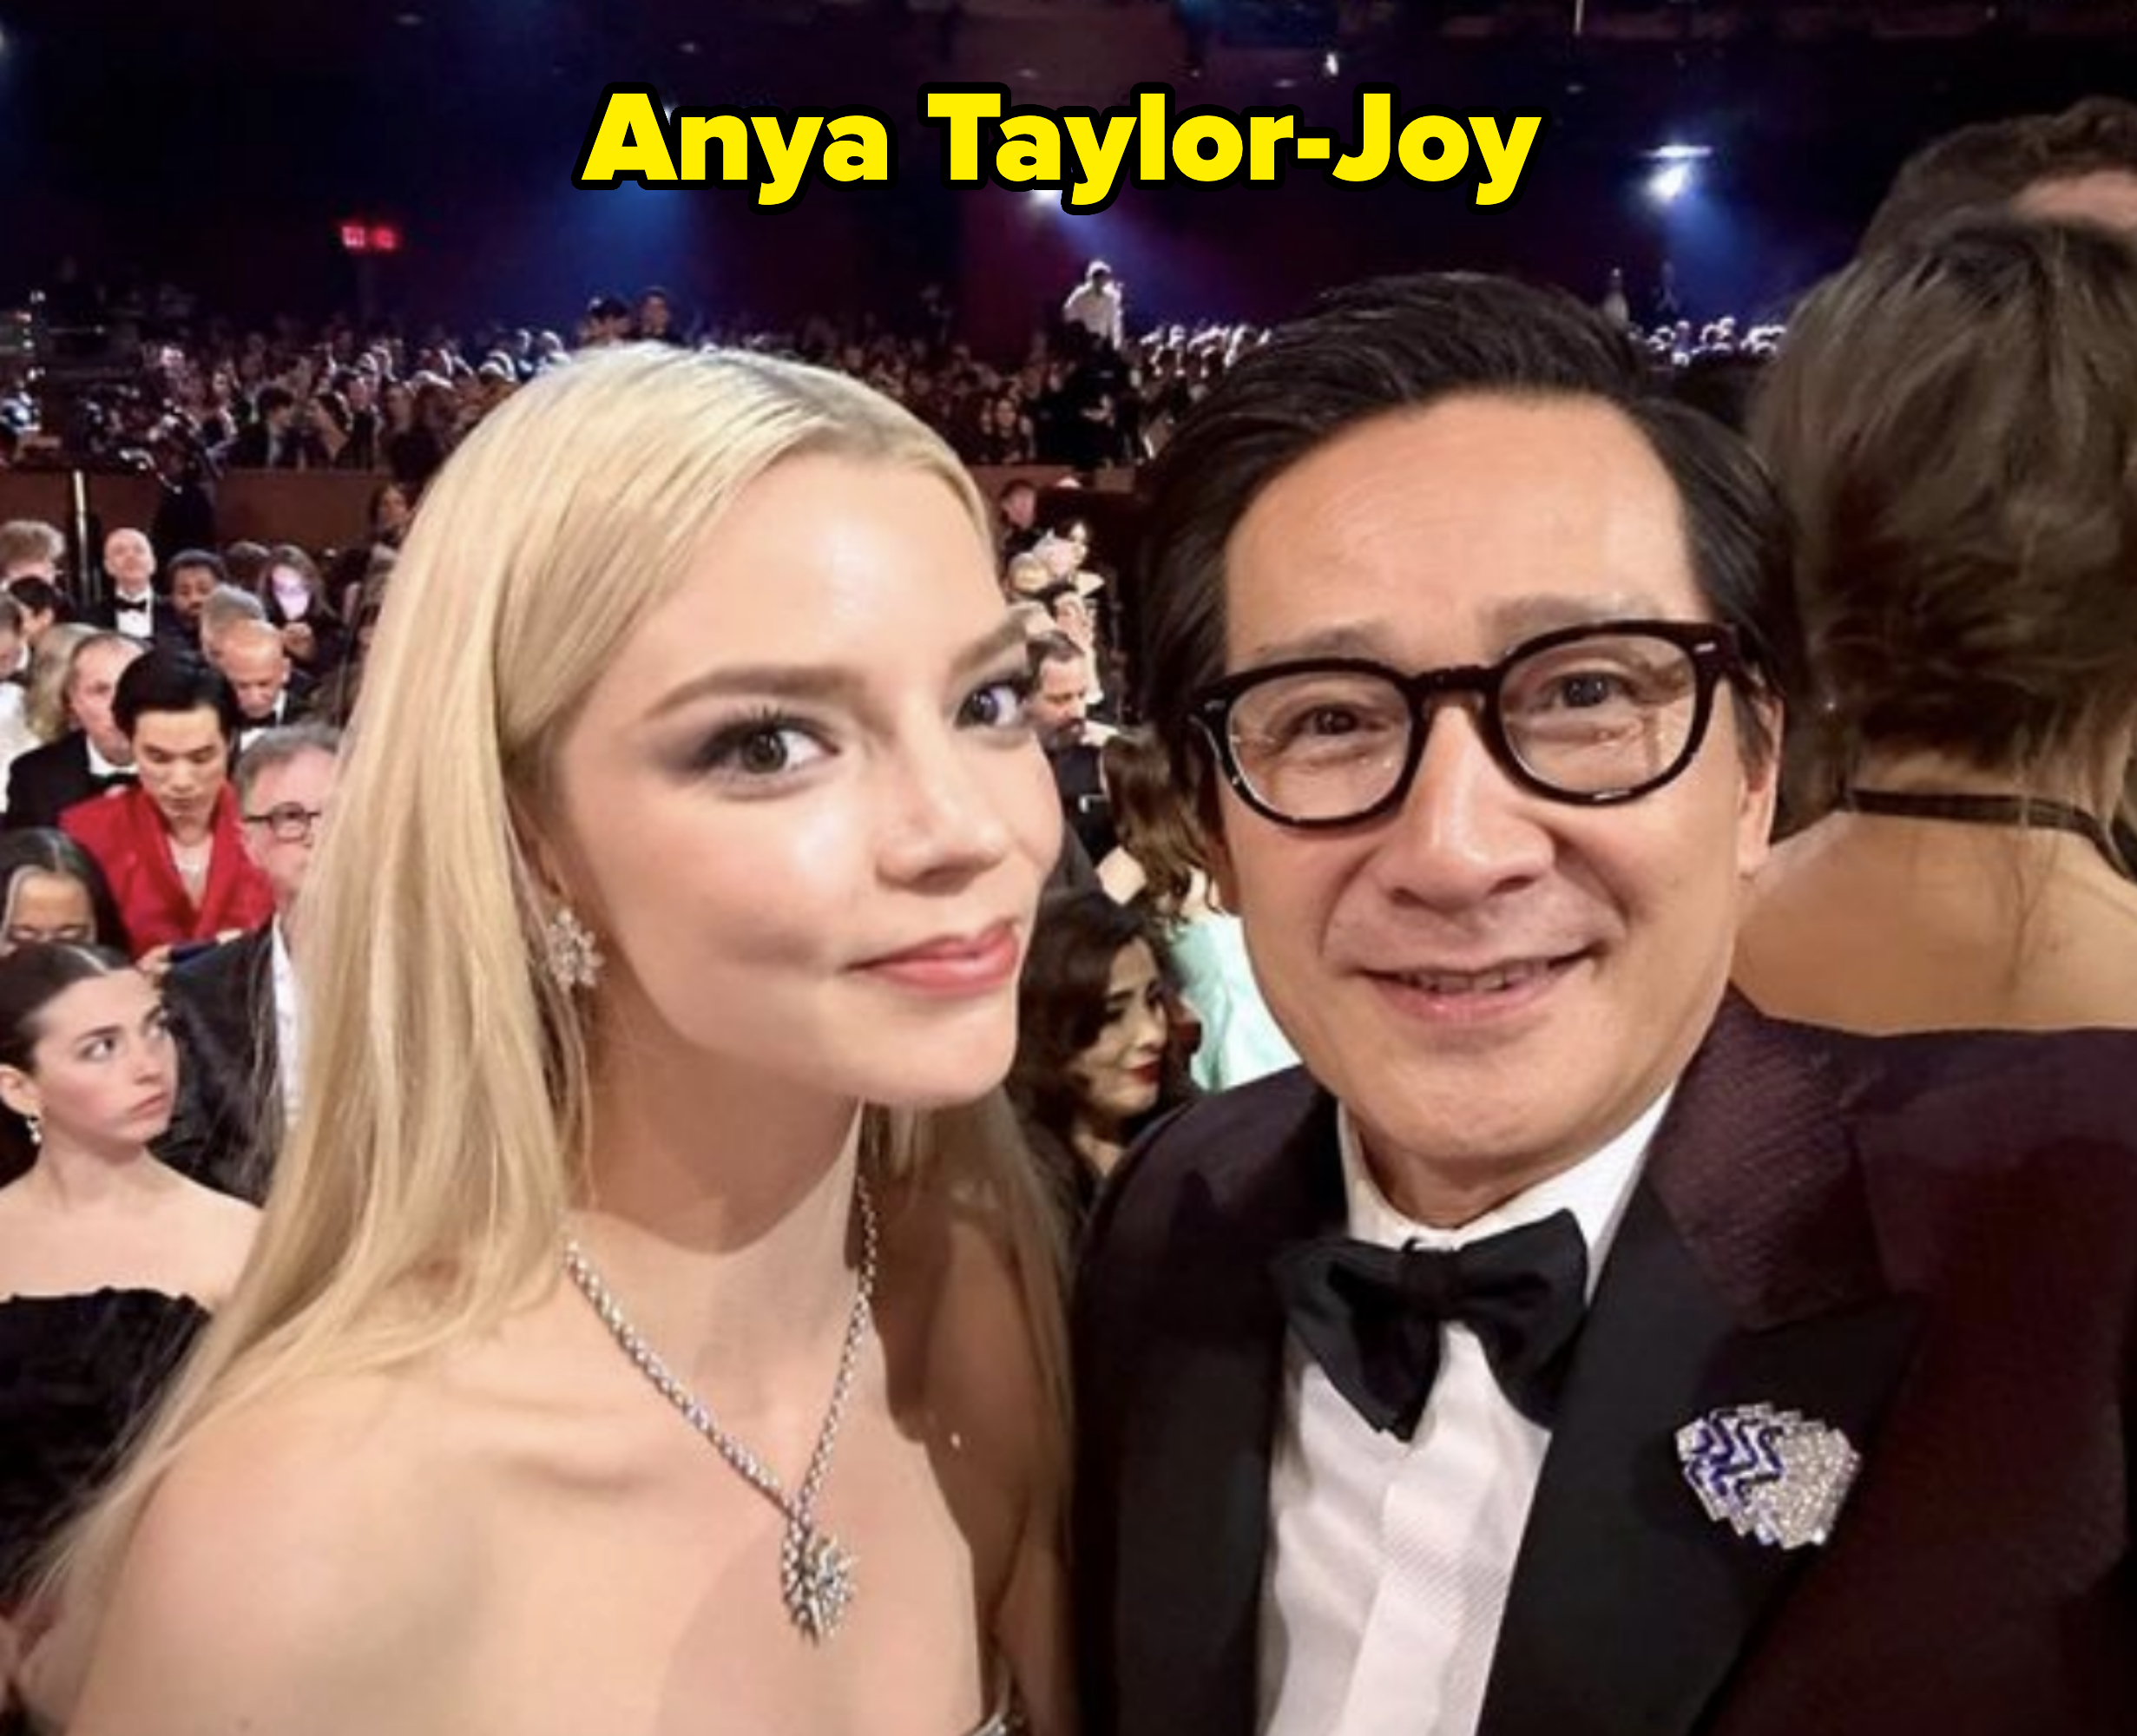 Anya Taylor-Joy and Ke Huy Quan